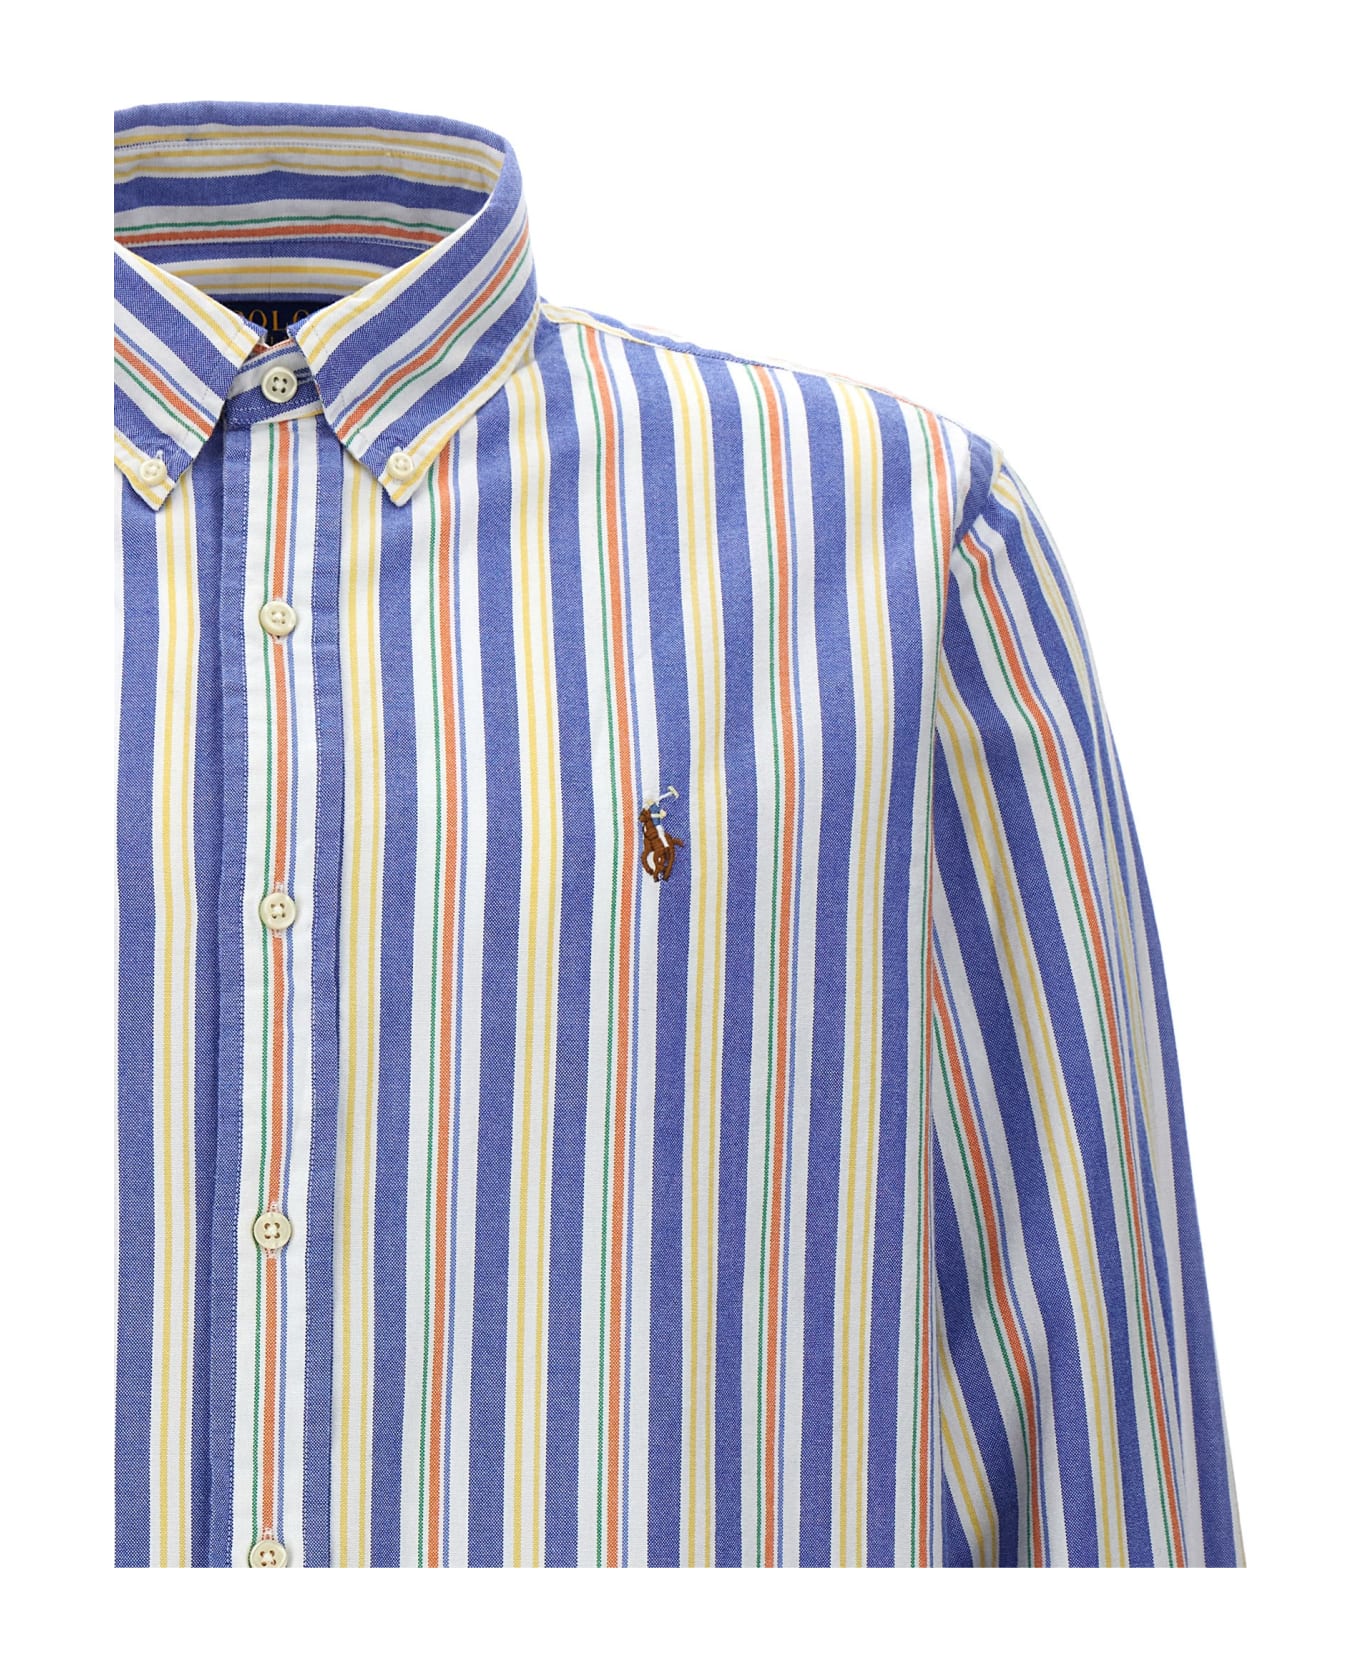 Polo Ralph Lauren 'sport' Shirt - MULTI